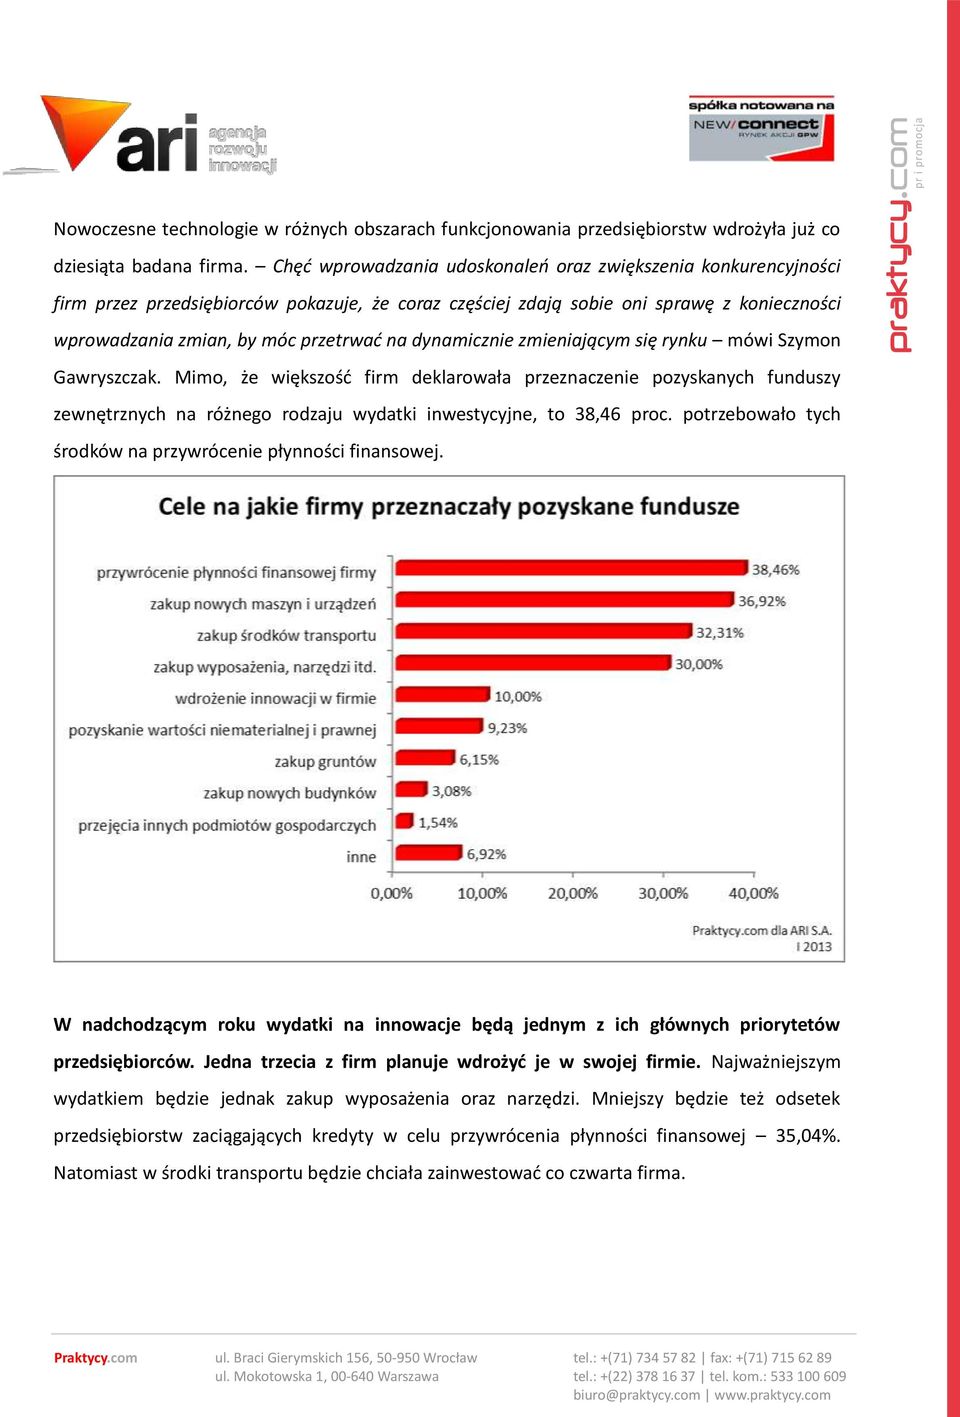 dynamicznie zmieniającym się rynku mówi Szymon Gawryszczak. Mimo, że większość firm deklarowała przeznaczenie pozyskanych funduszy zewnętrznych na różnego rodzaju wydatki inwestycyjne, to 38,46 proc.